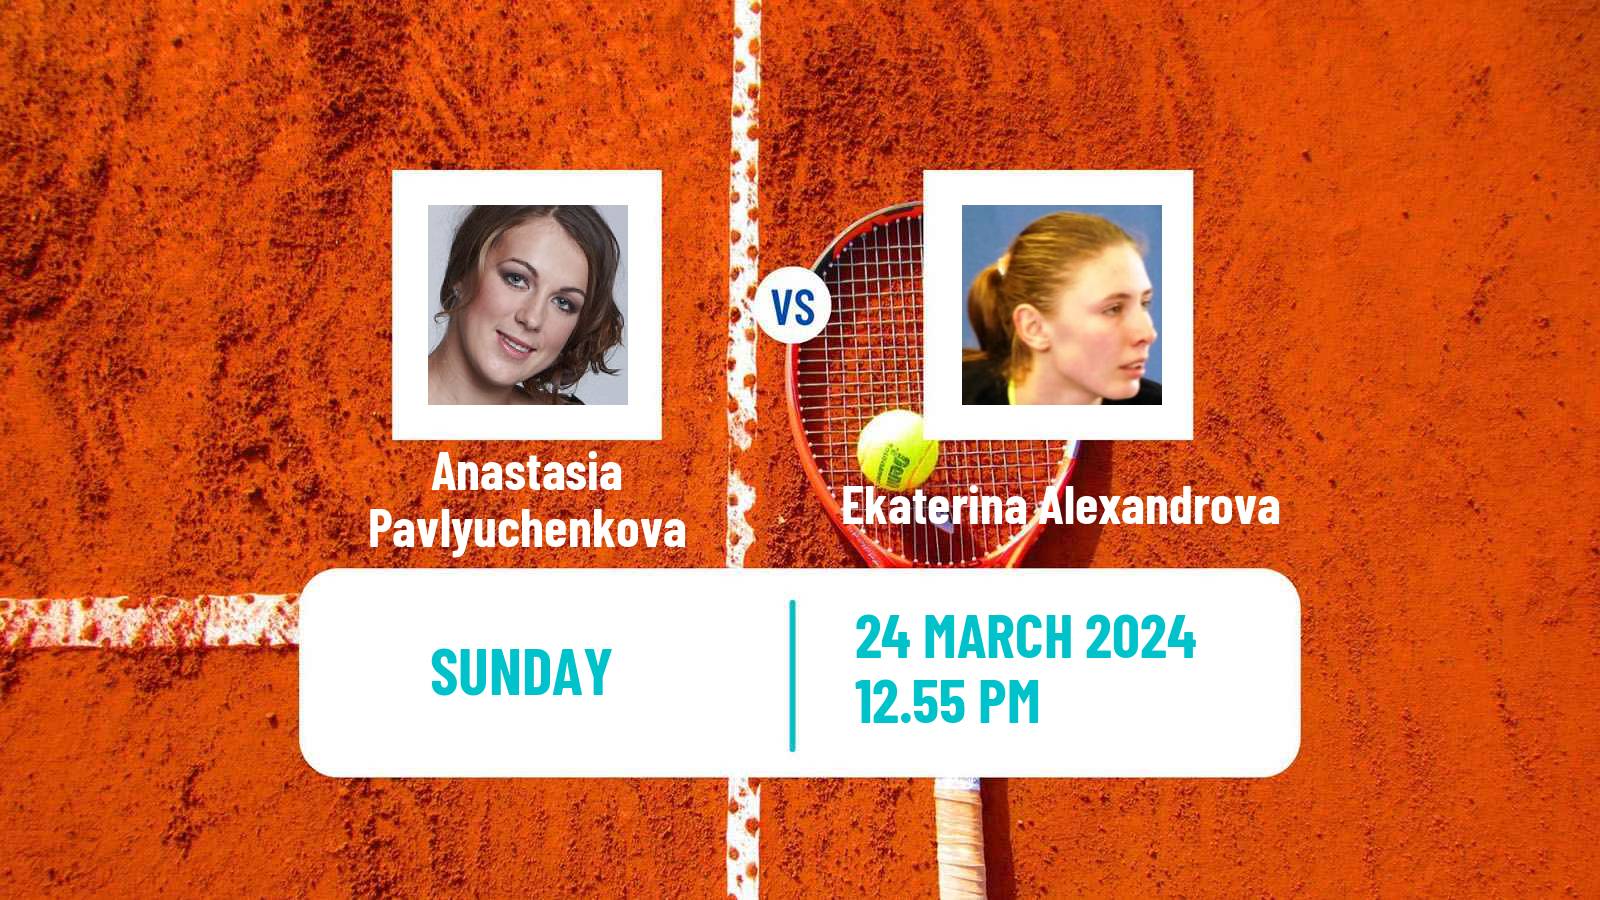 Tennis WTA Miami Anastasia Pavlyuchenkova - Ekaterina Alexandrova